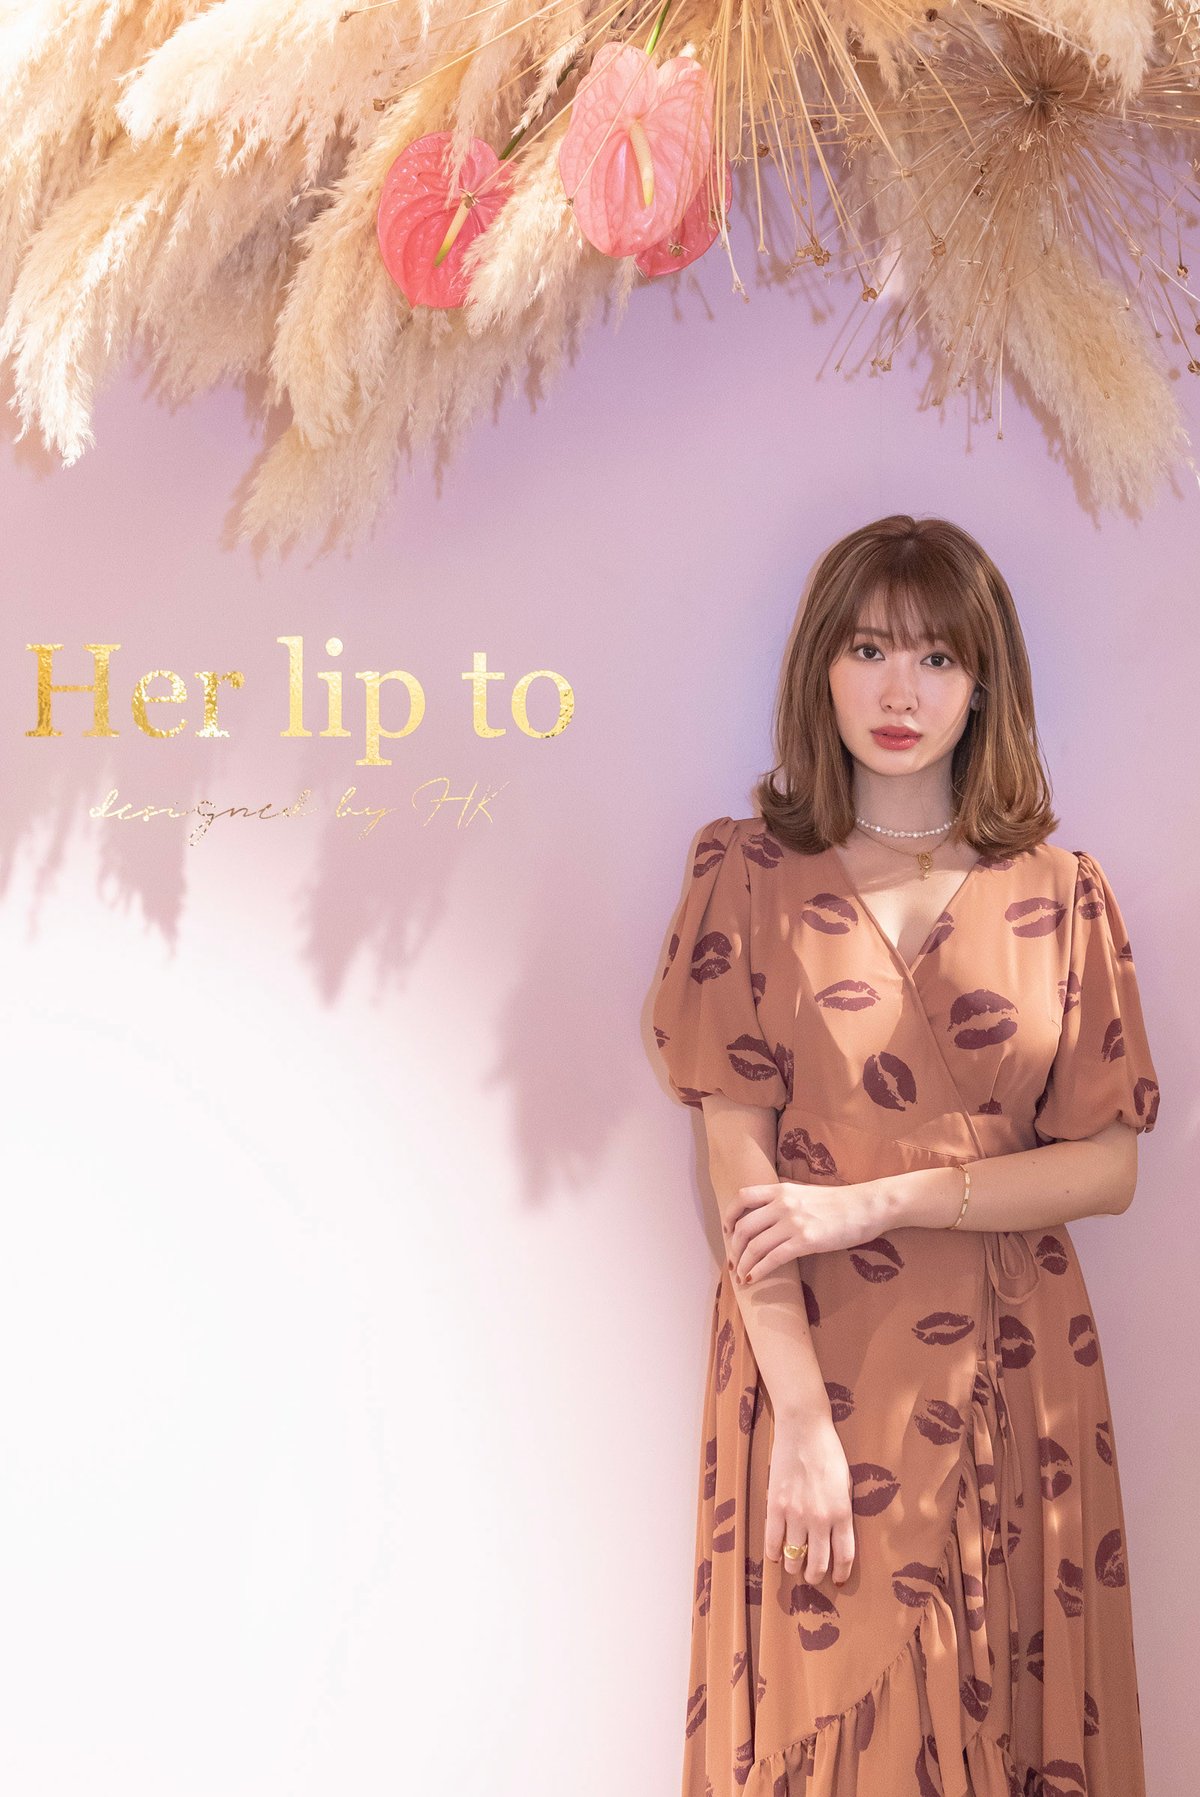 小嶋陽菜によるブランド「Her lip to」限定店が伊勢丹新宿店に、リップ